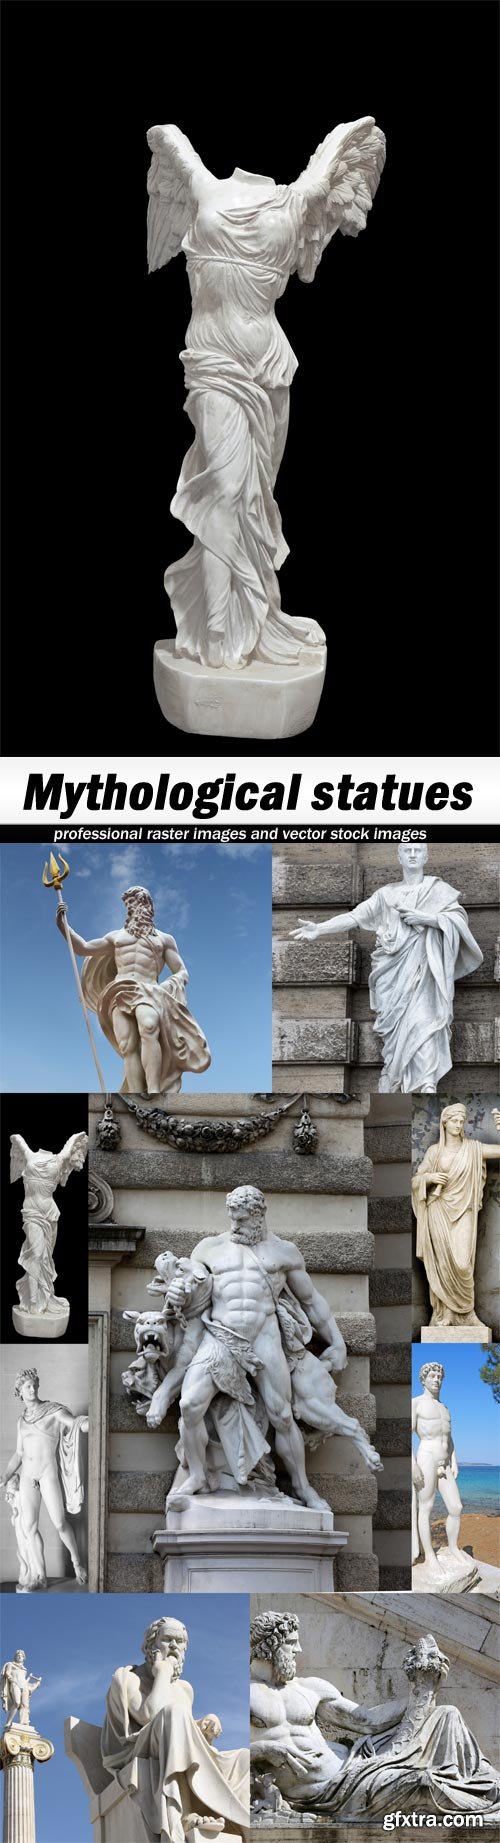 Mythological statues